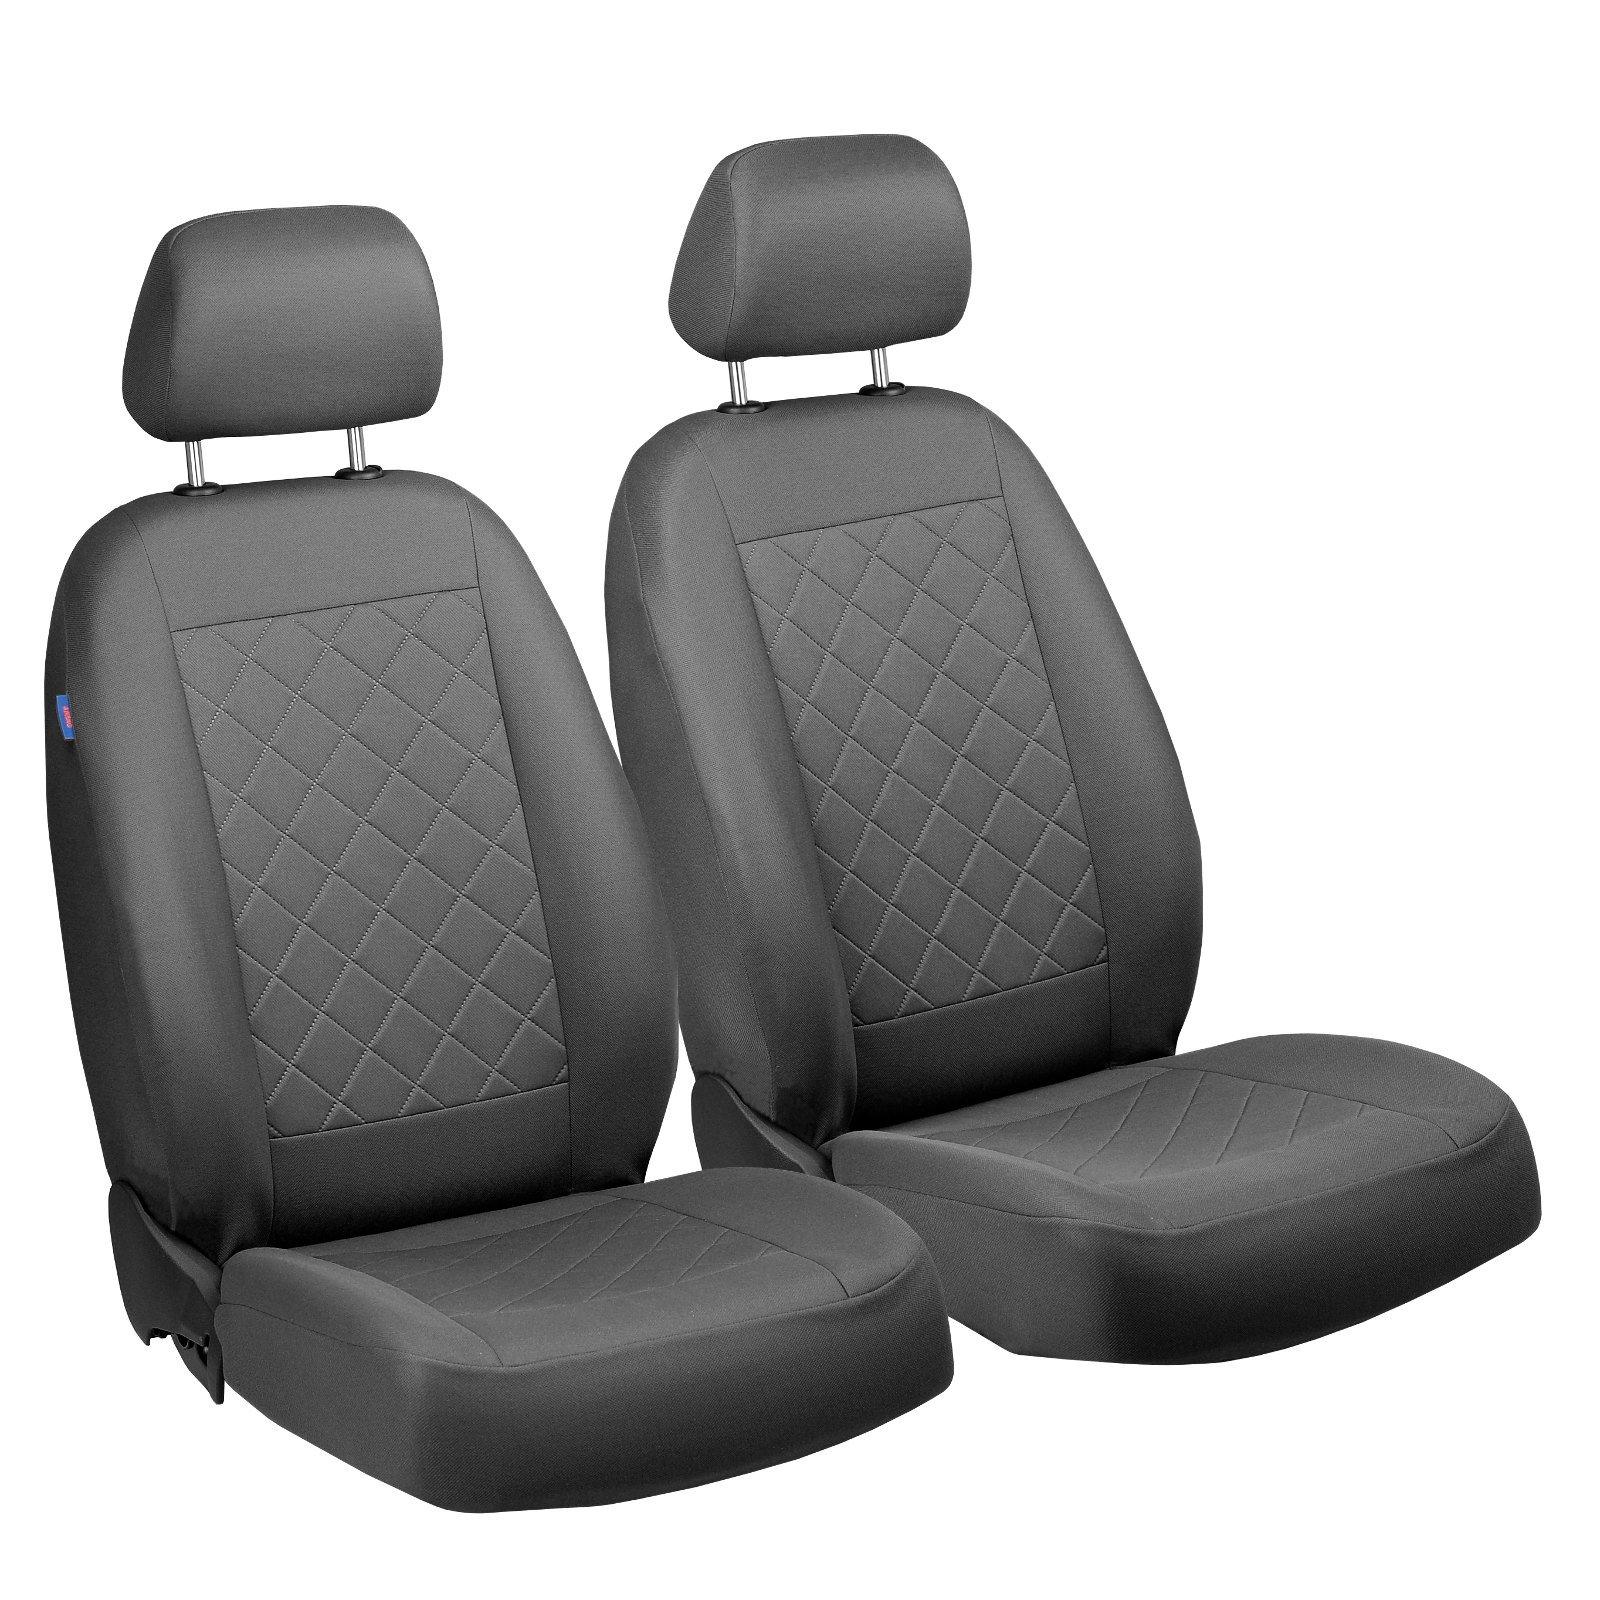 Carens Vorne Sitzbezüge - für Fahrer und Beifahrer - Farbe Premium Grau Gepresstes Karomuster